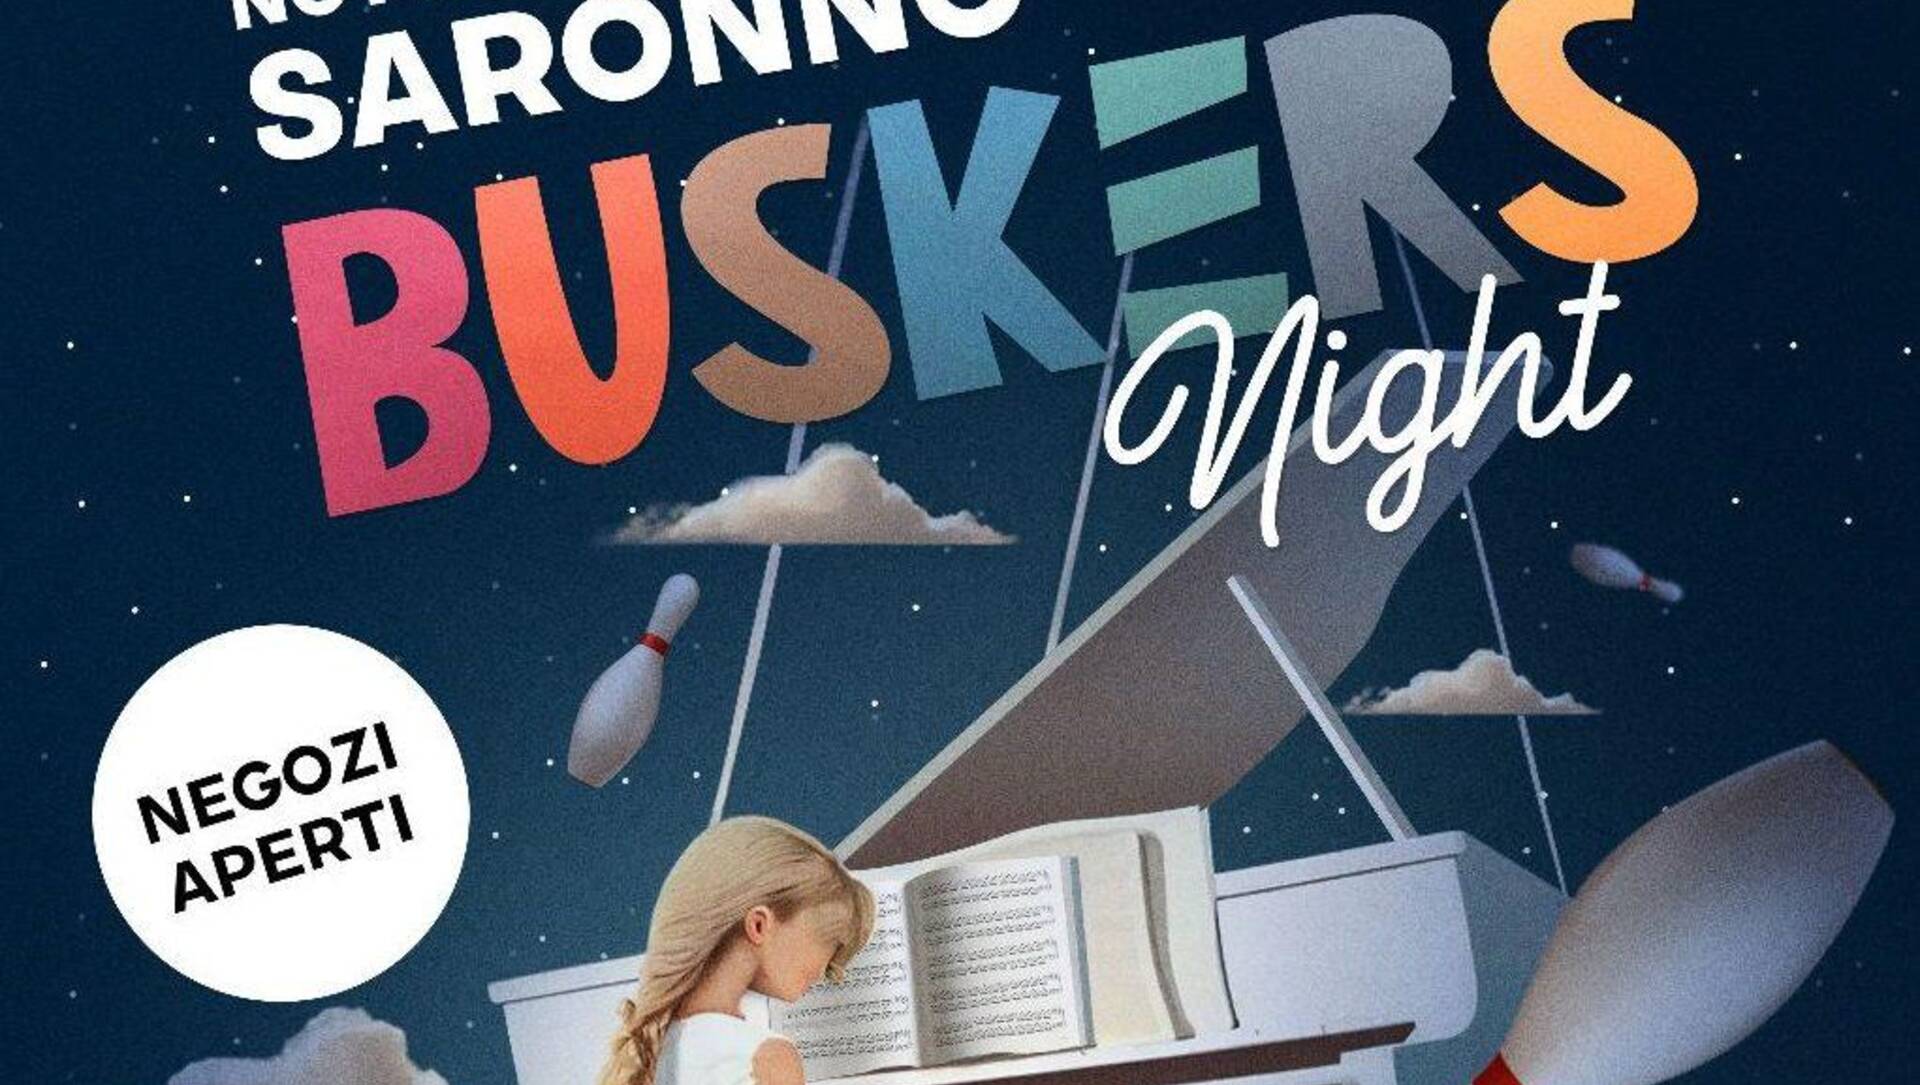 La notte bianca sarà una Buskers Night: evento clou lo sky piano che ha debuttato a Dubai